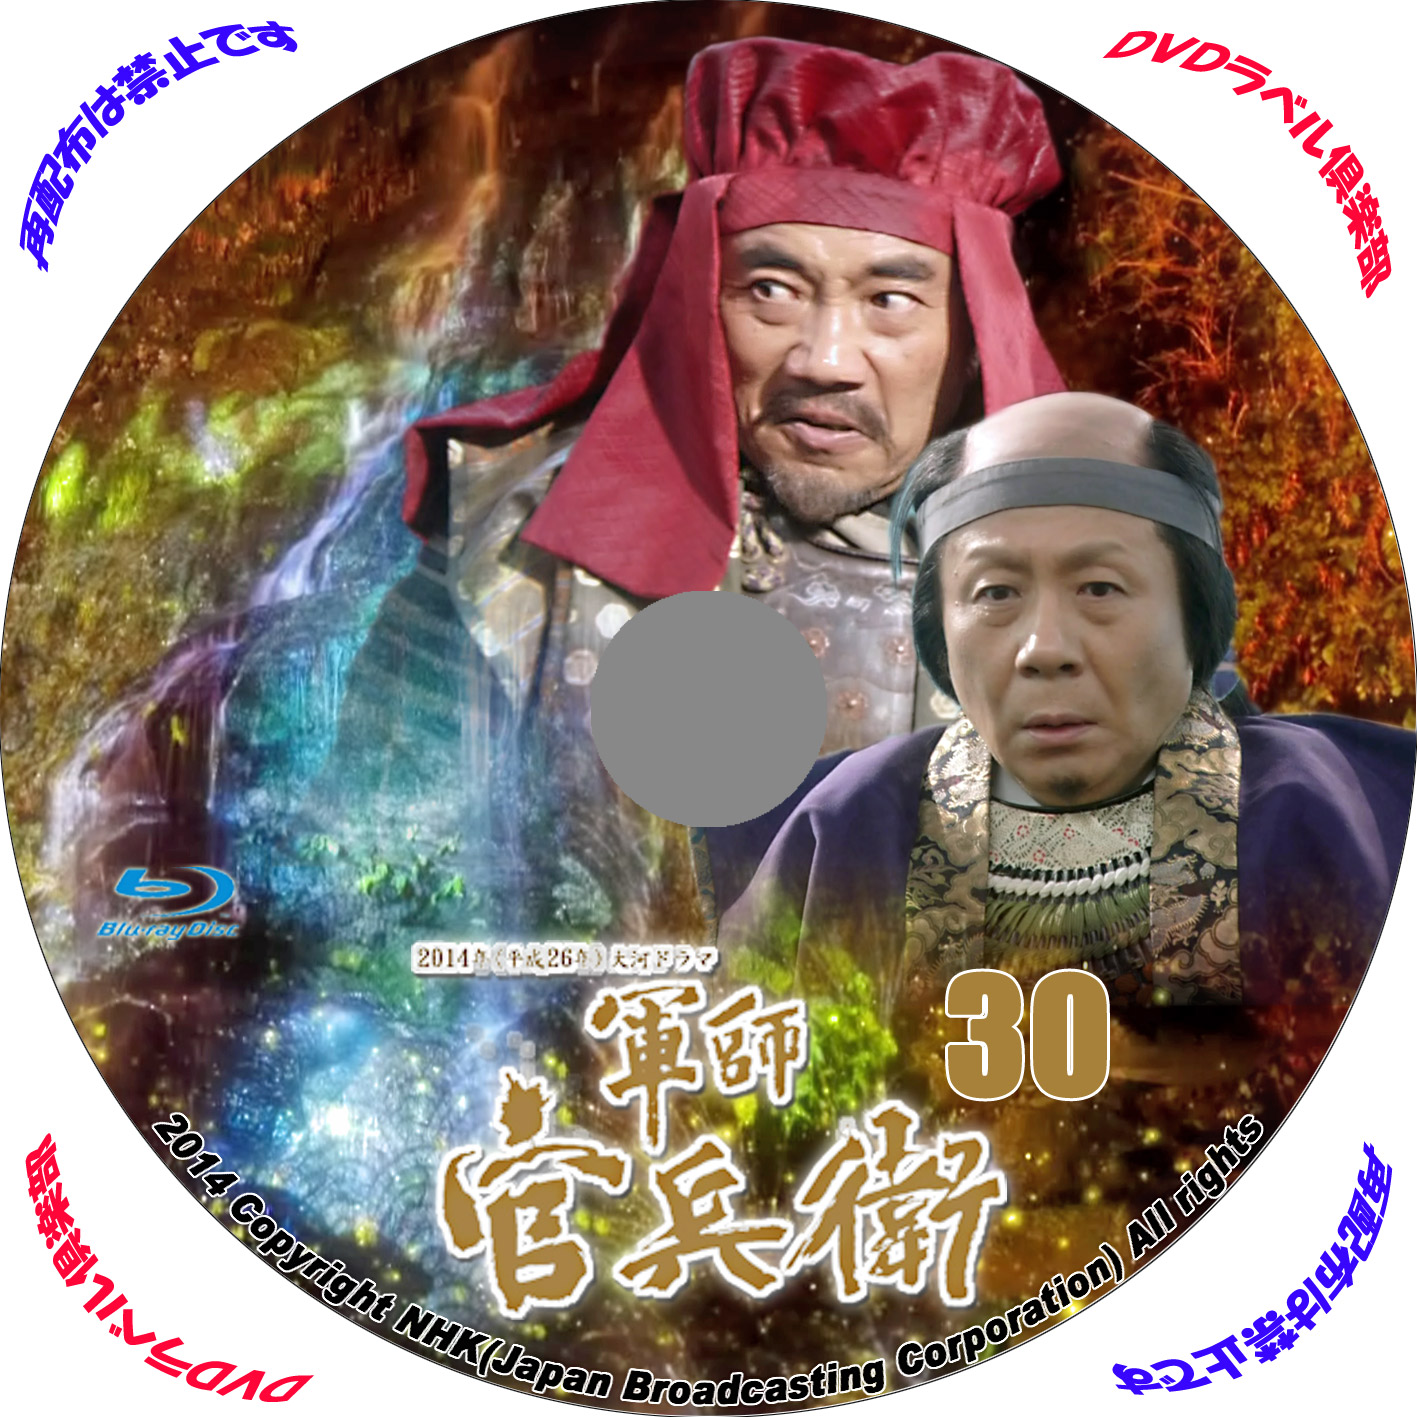 DVDラベル レーベル 自作 倶楽部